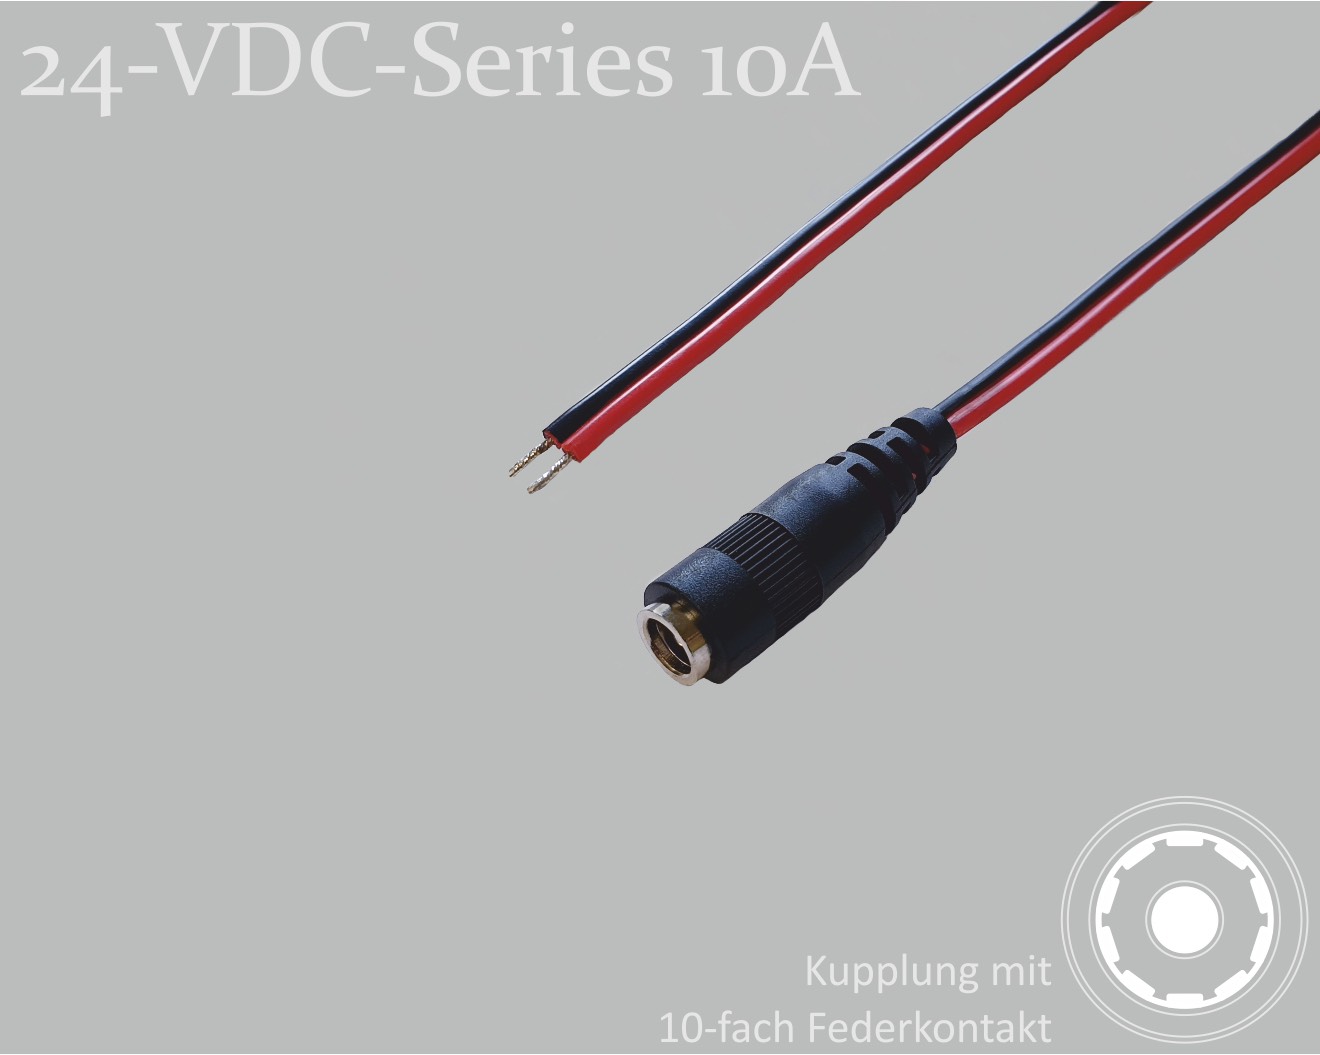 24-VDC-Series 10A, DC-Anschlusskabel, DC-Kupplung mit 10-Federkontakt 2,5x5,5mm, Flachkabel 2x0,75mm², rot/schwarz, verzinnte Enden, 1,5m